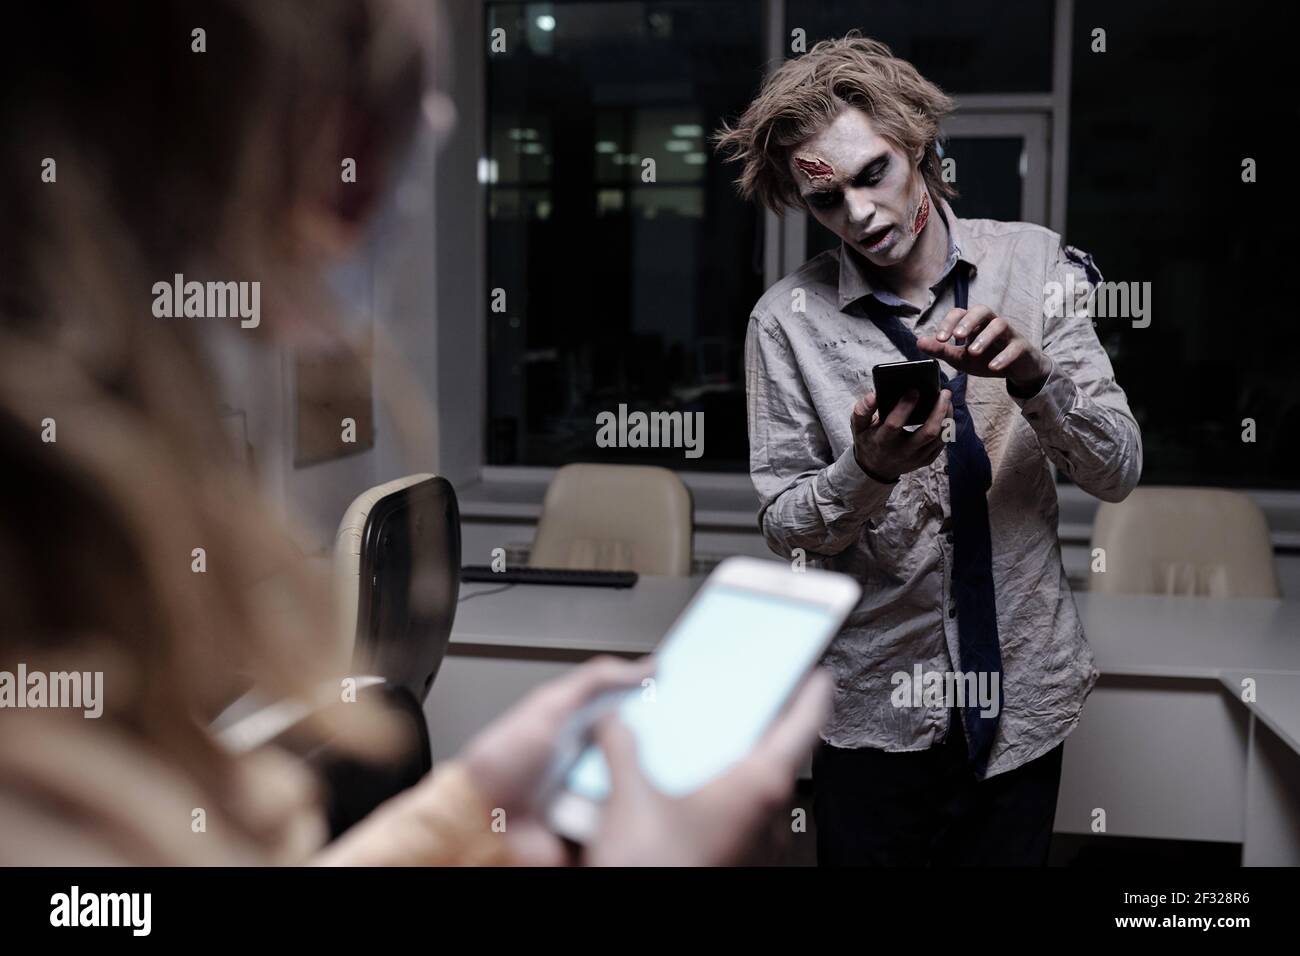 Uomo d'affari morto e spooky con greasepaint zombie su faccia e. scorrimento delle mani nello smartphone in ufficio a mezzanotte con femmina davanti Foto Stock